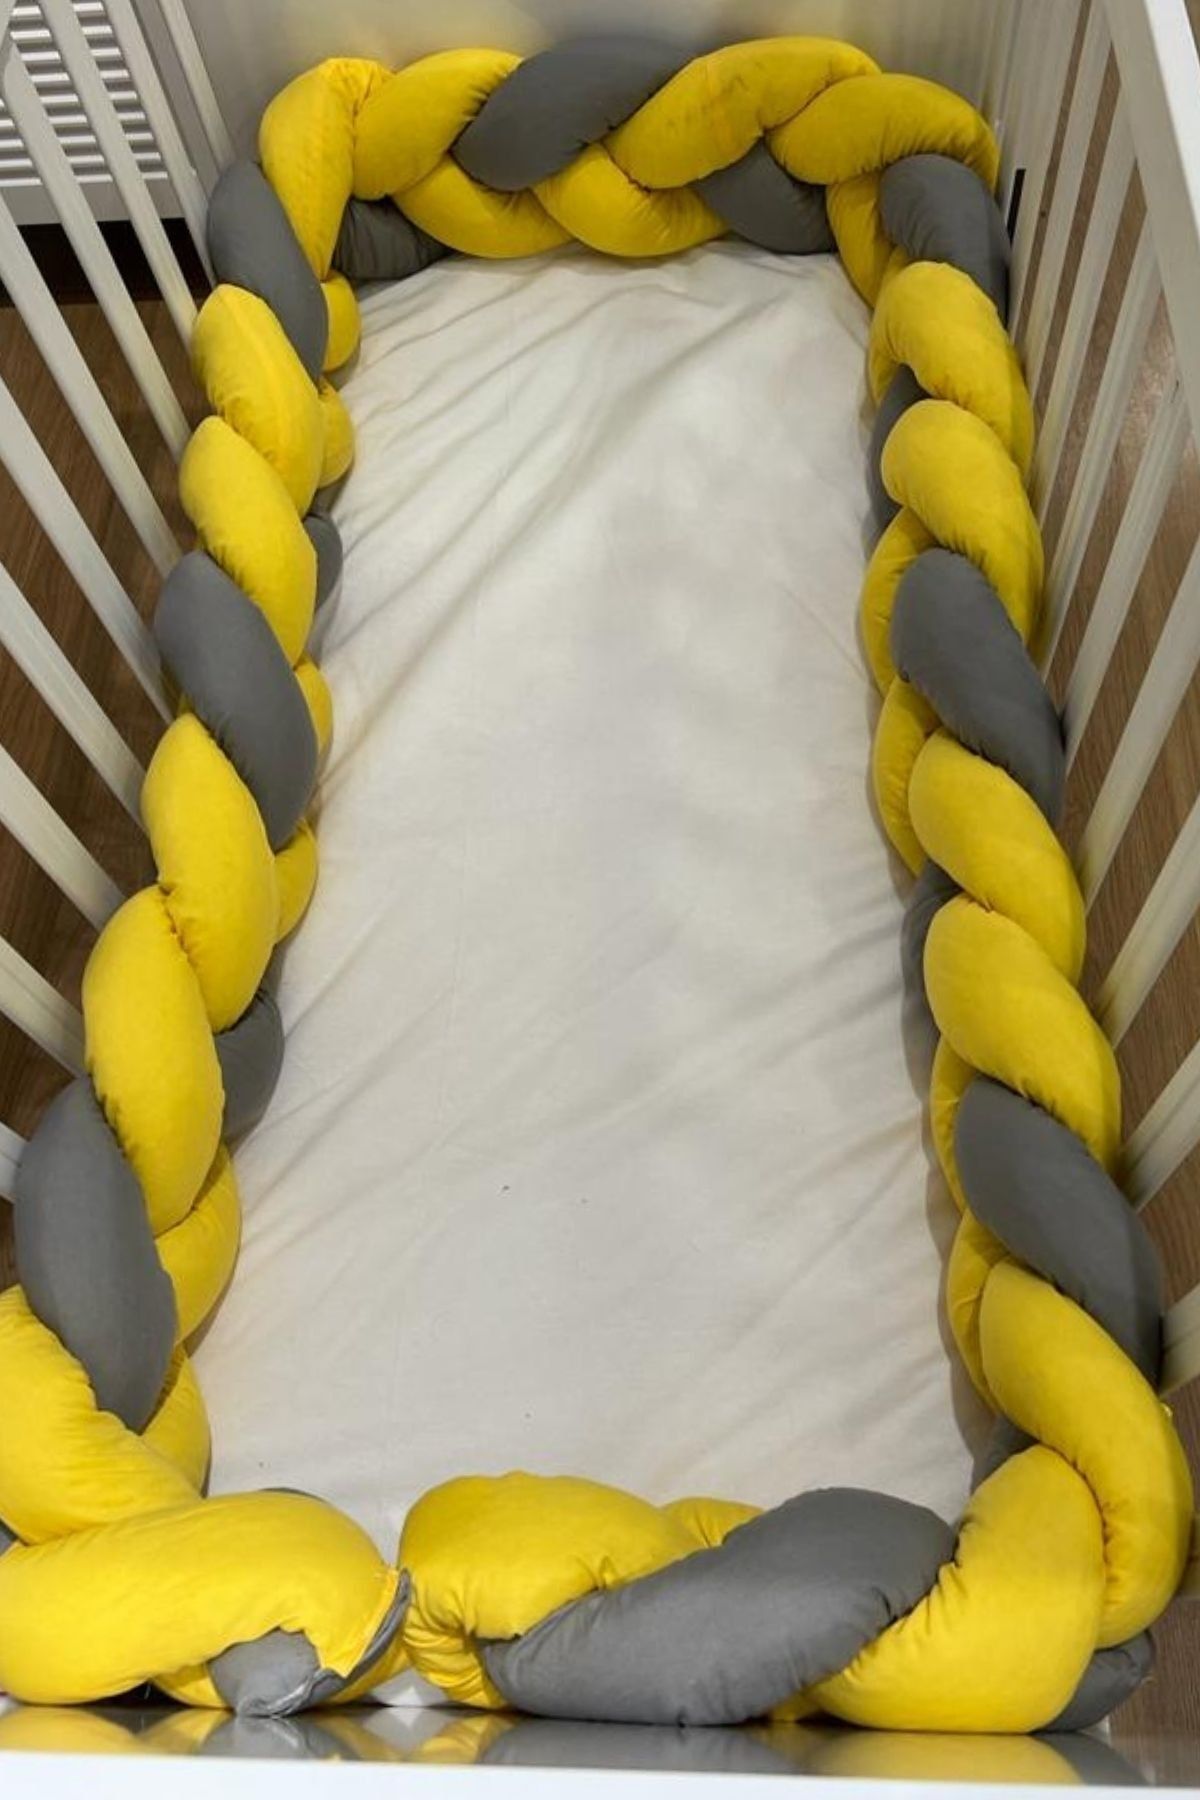 ilknur bebe Sarı&gri Üçlü Sarım Örgülü Bebek Beşik Kenar Korumalık 60x120 Beşikler Için Uygun